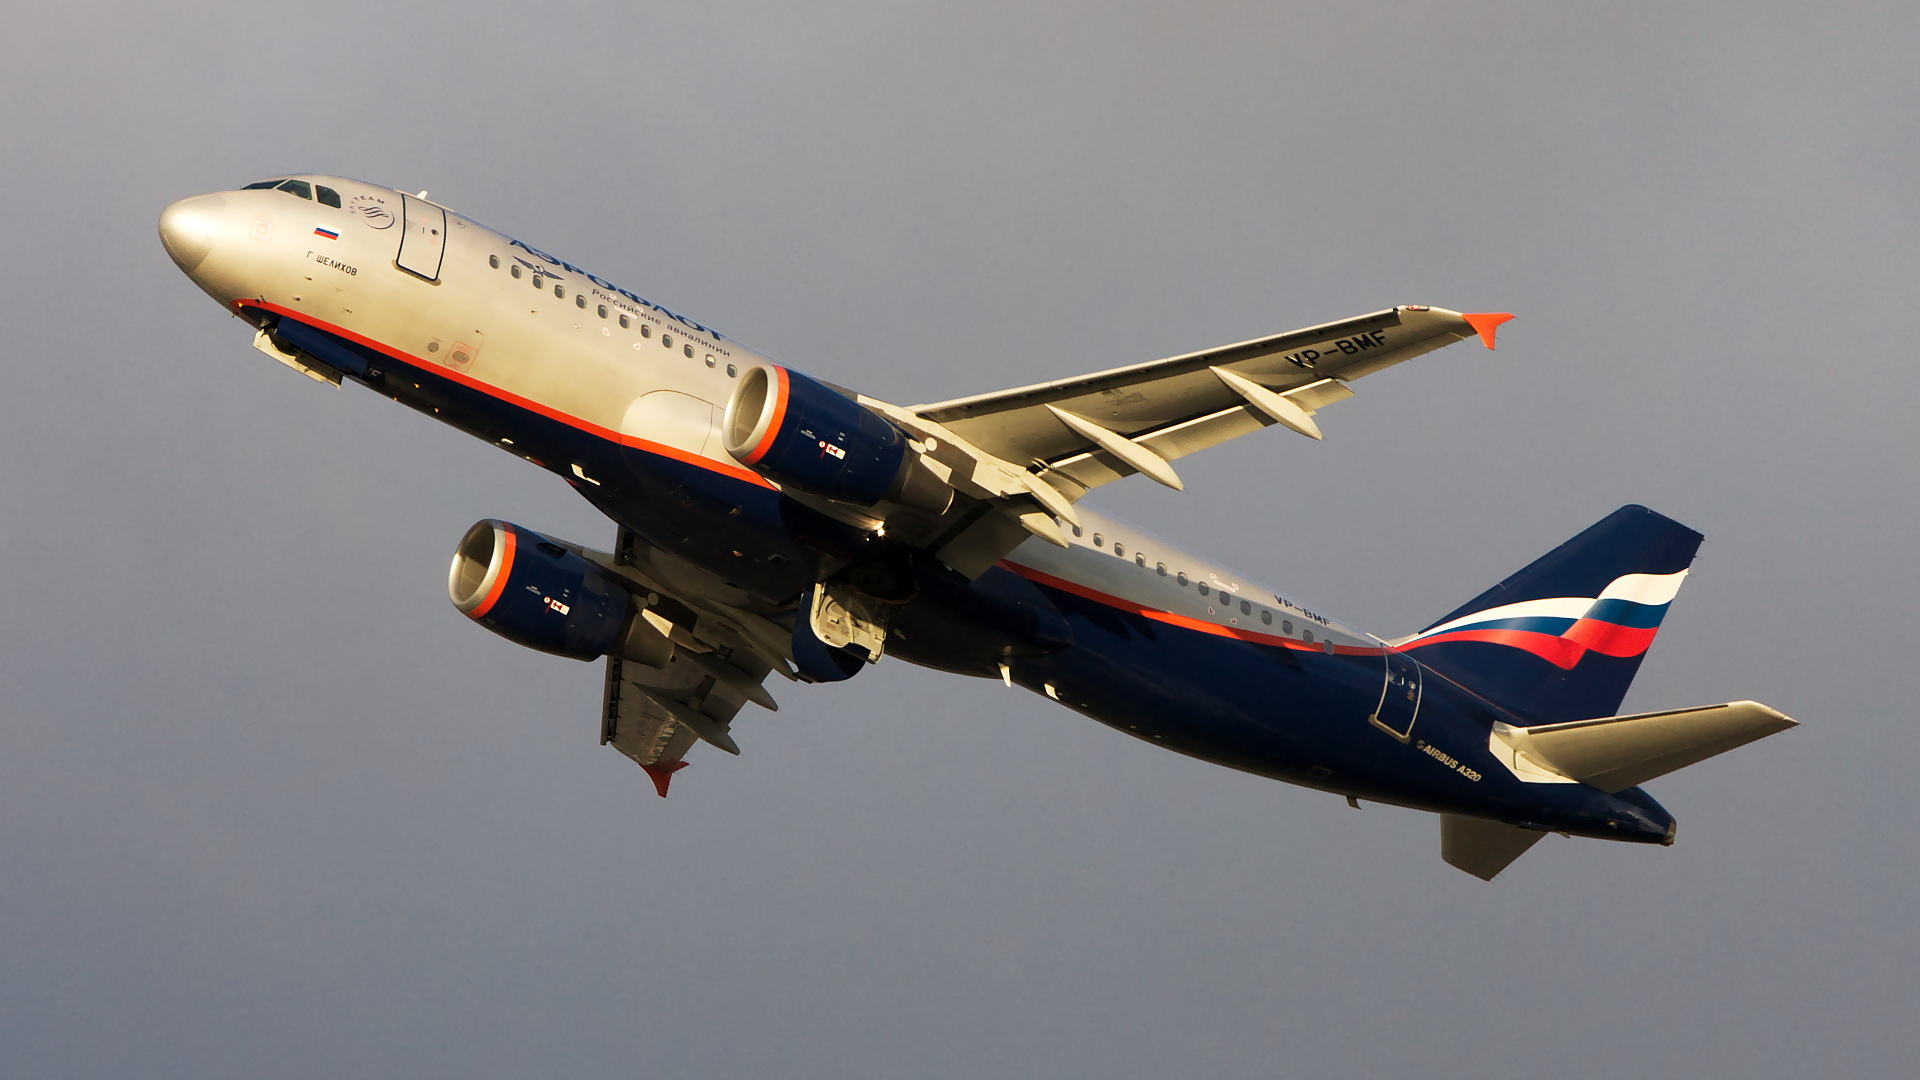 VP-BMF ✈ Aeroflot Russian Airlines Airbus A320-214 @ London-Heathrow